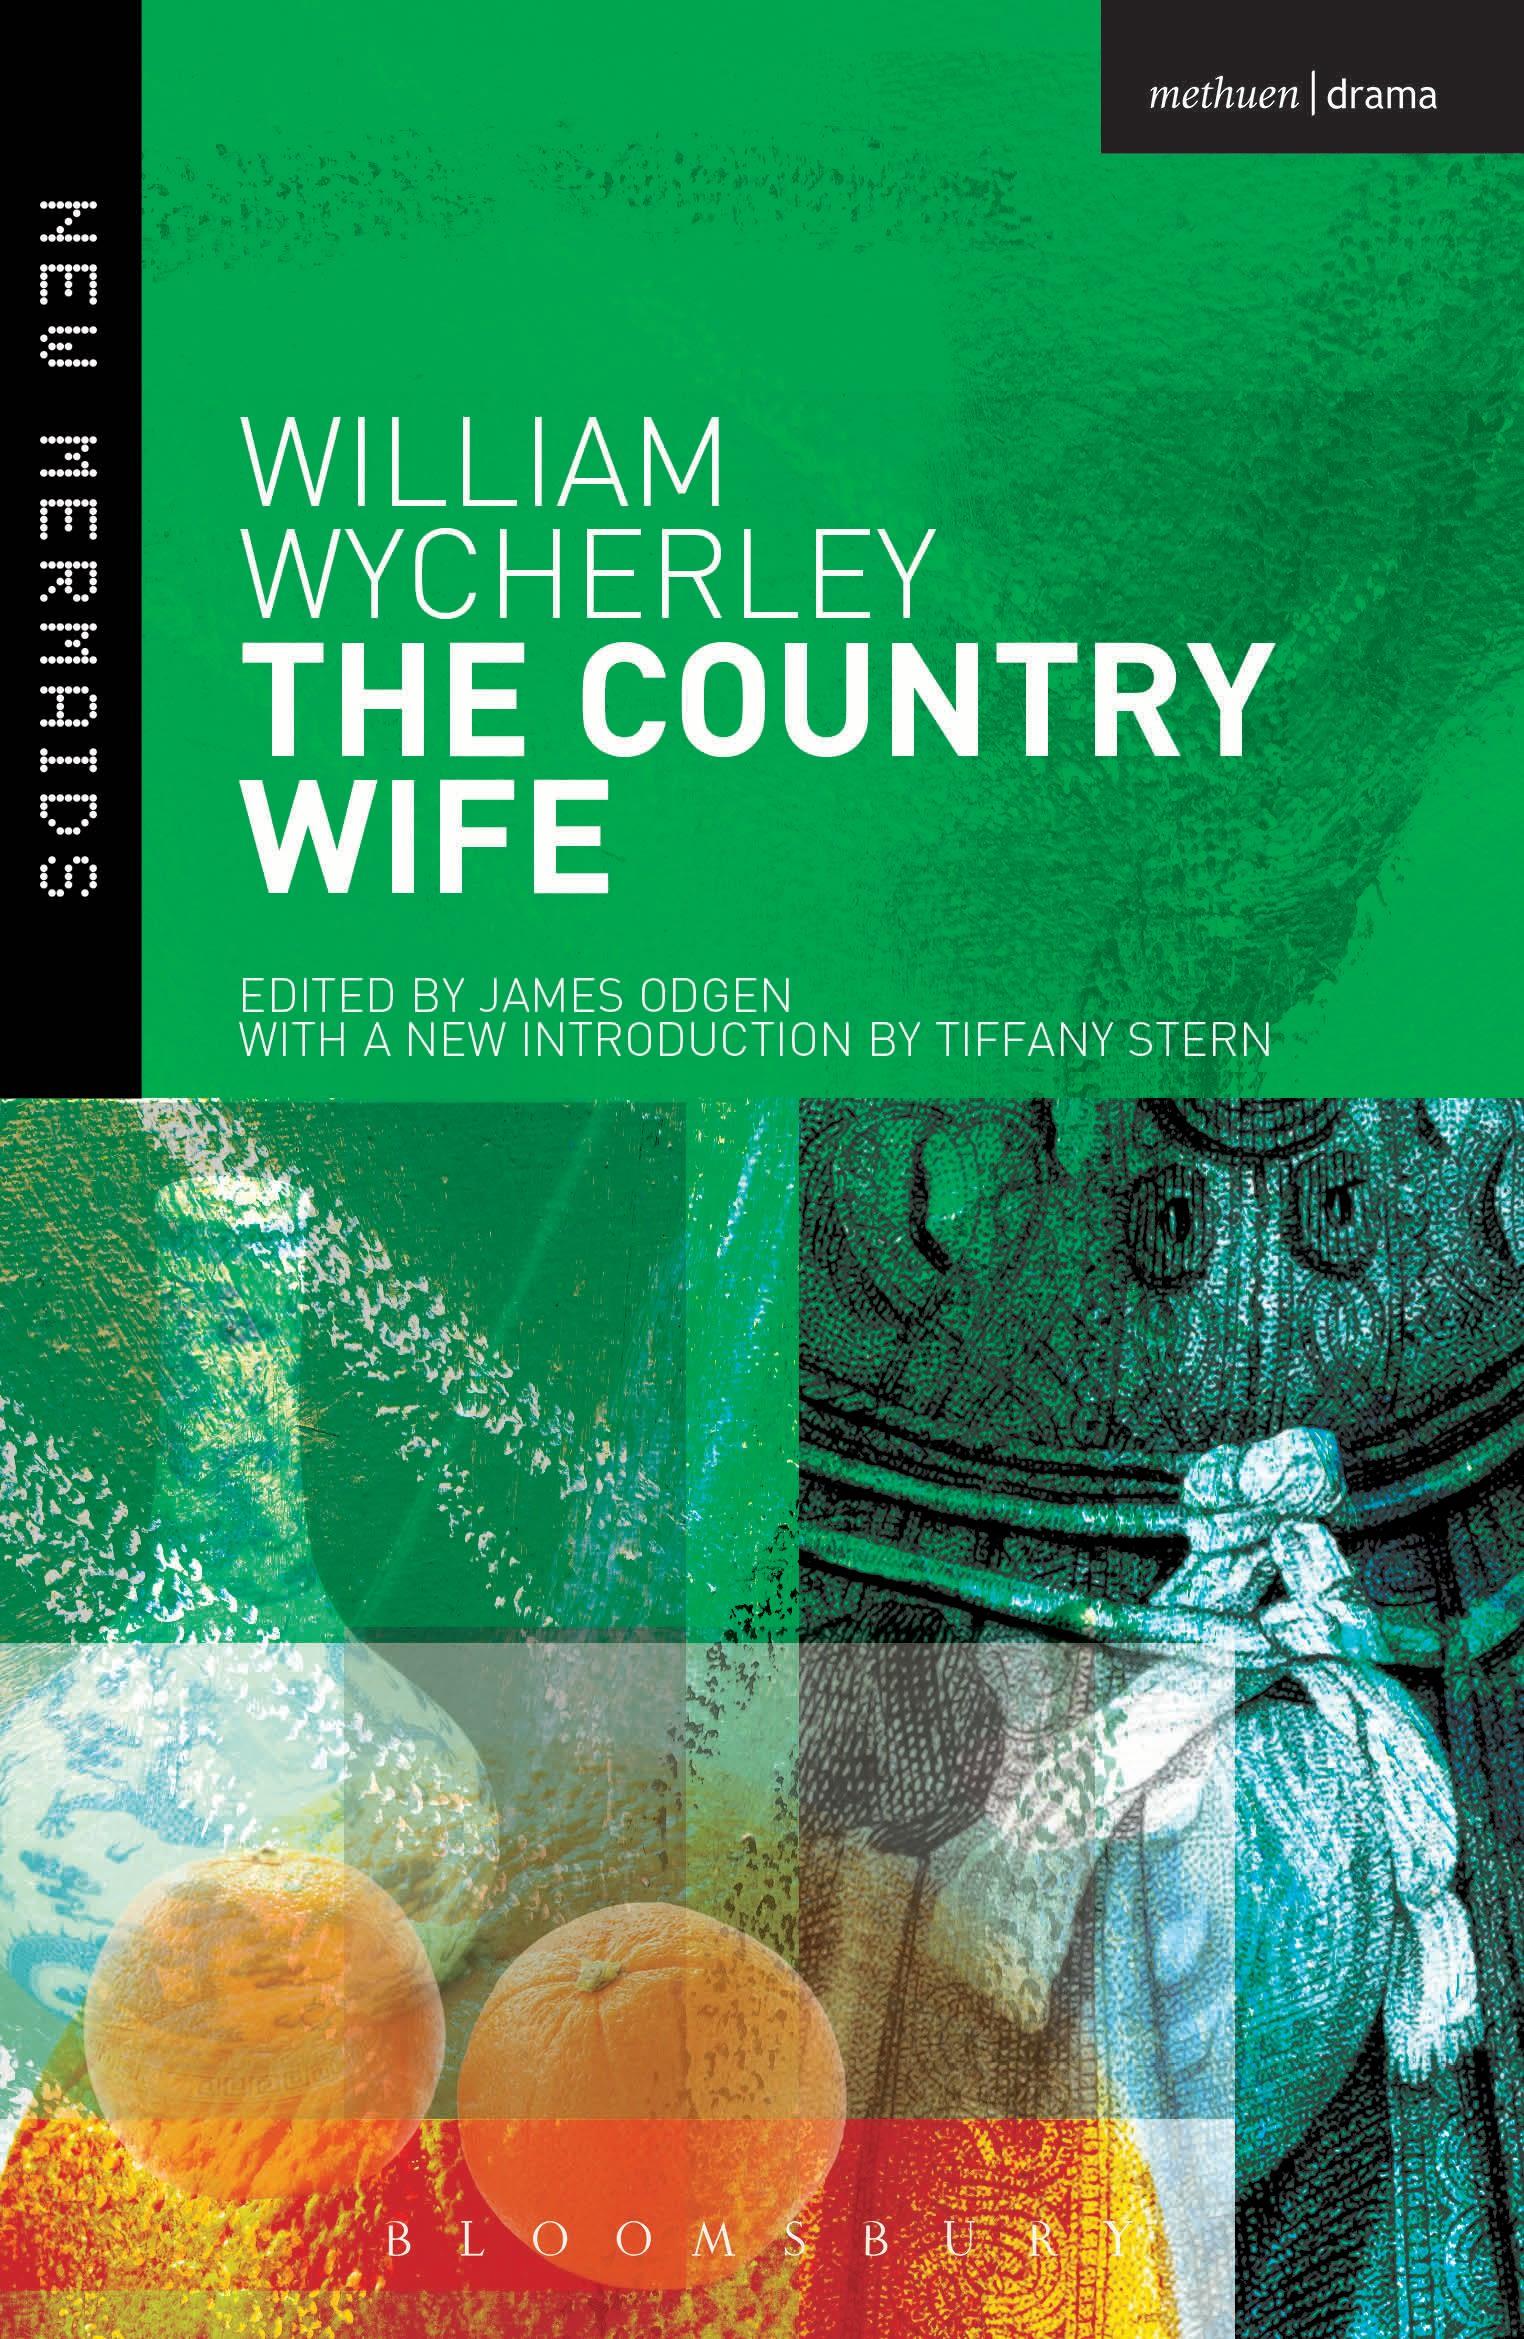 The Country Wife / William Wycherley / Taschenbuch / Kartoniert / Broschiert / Englisch / 2014 / Bloomsbury Publishing PLC / EAN 9781408179895 - Wycherley, William